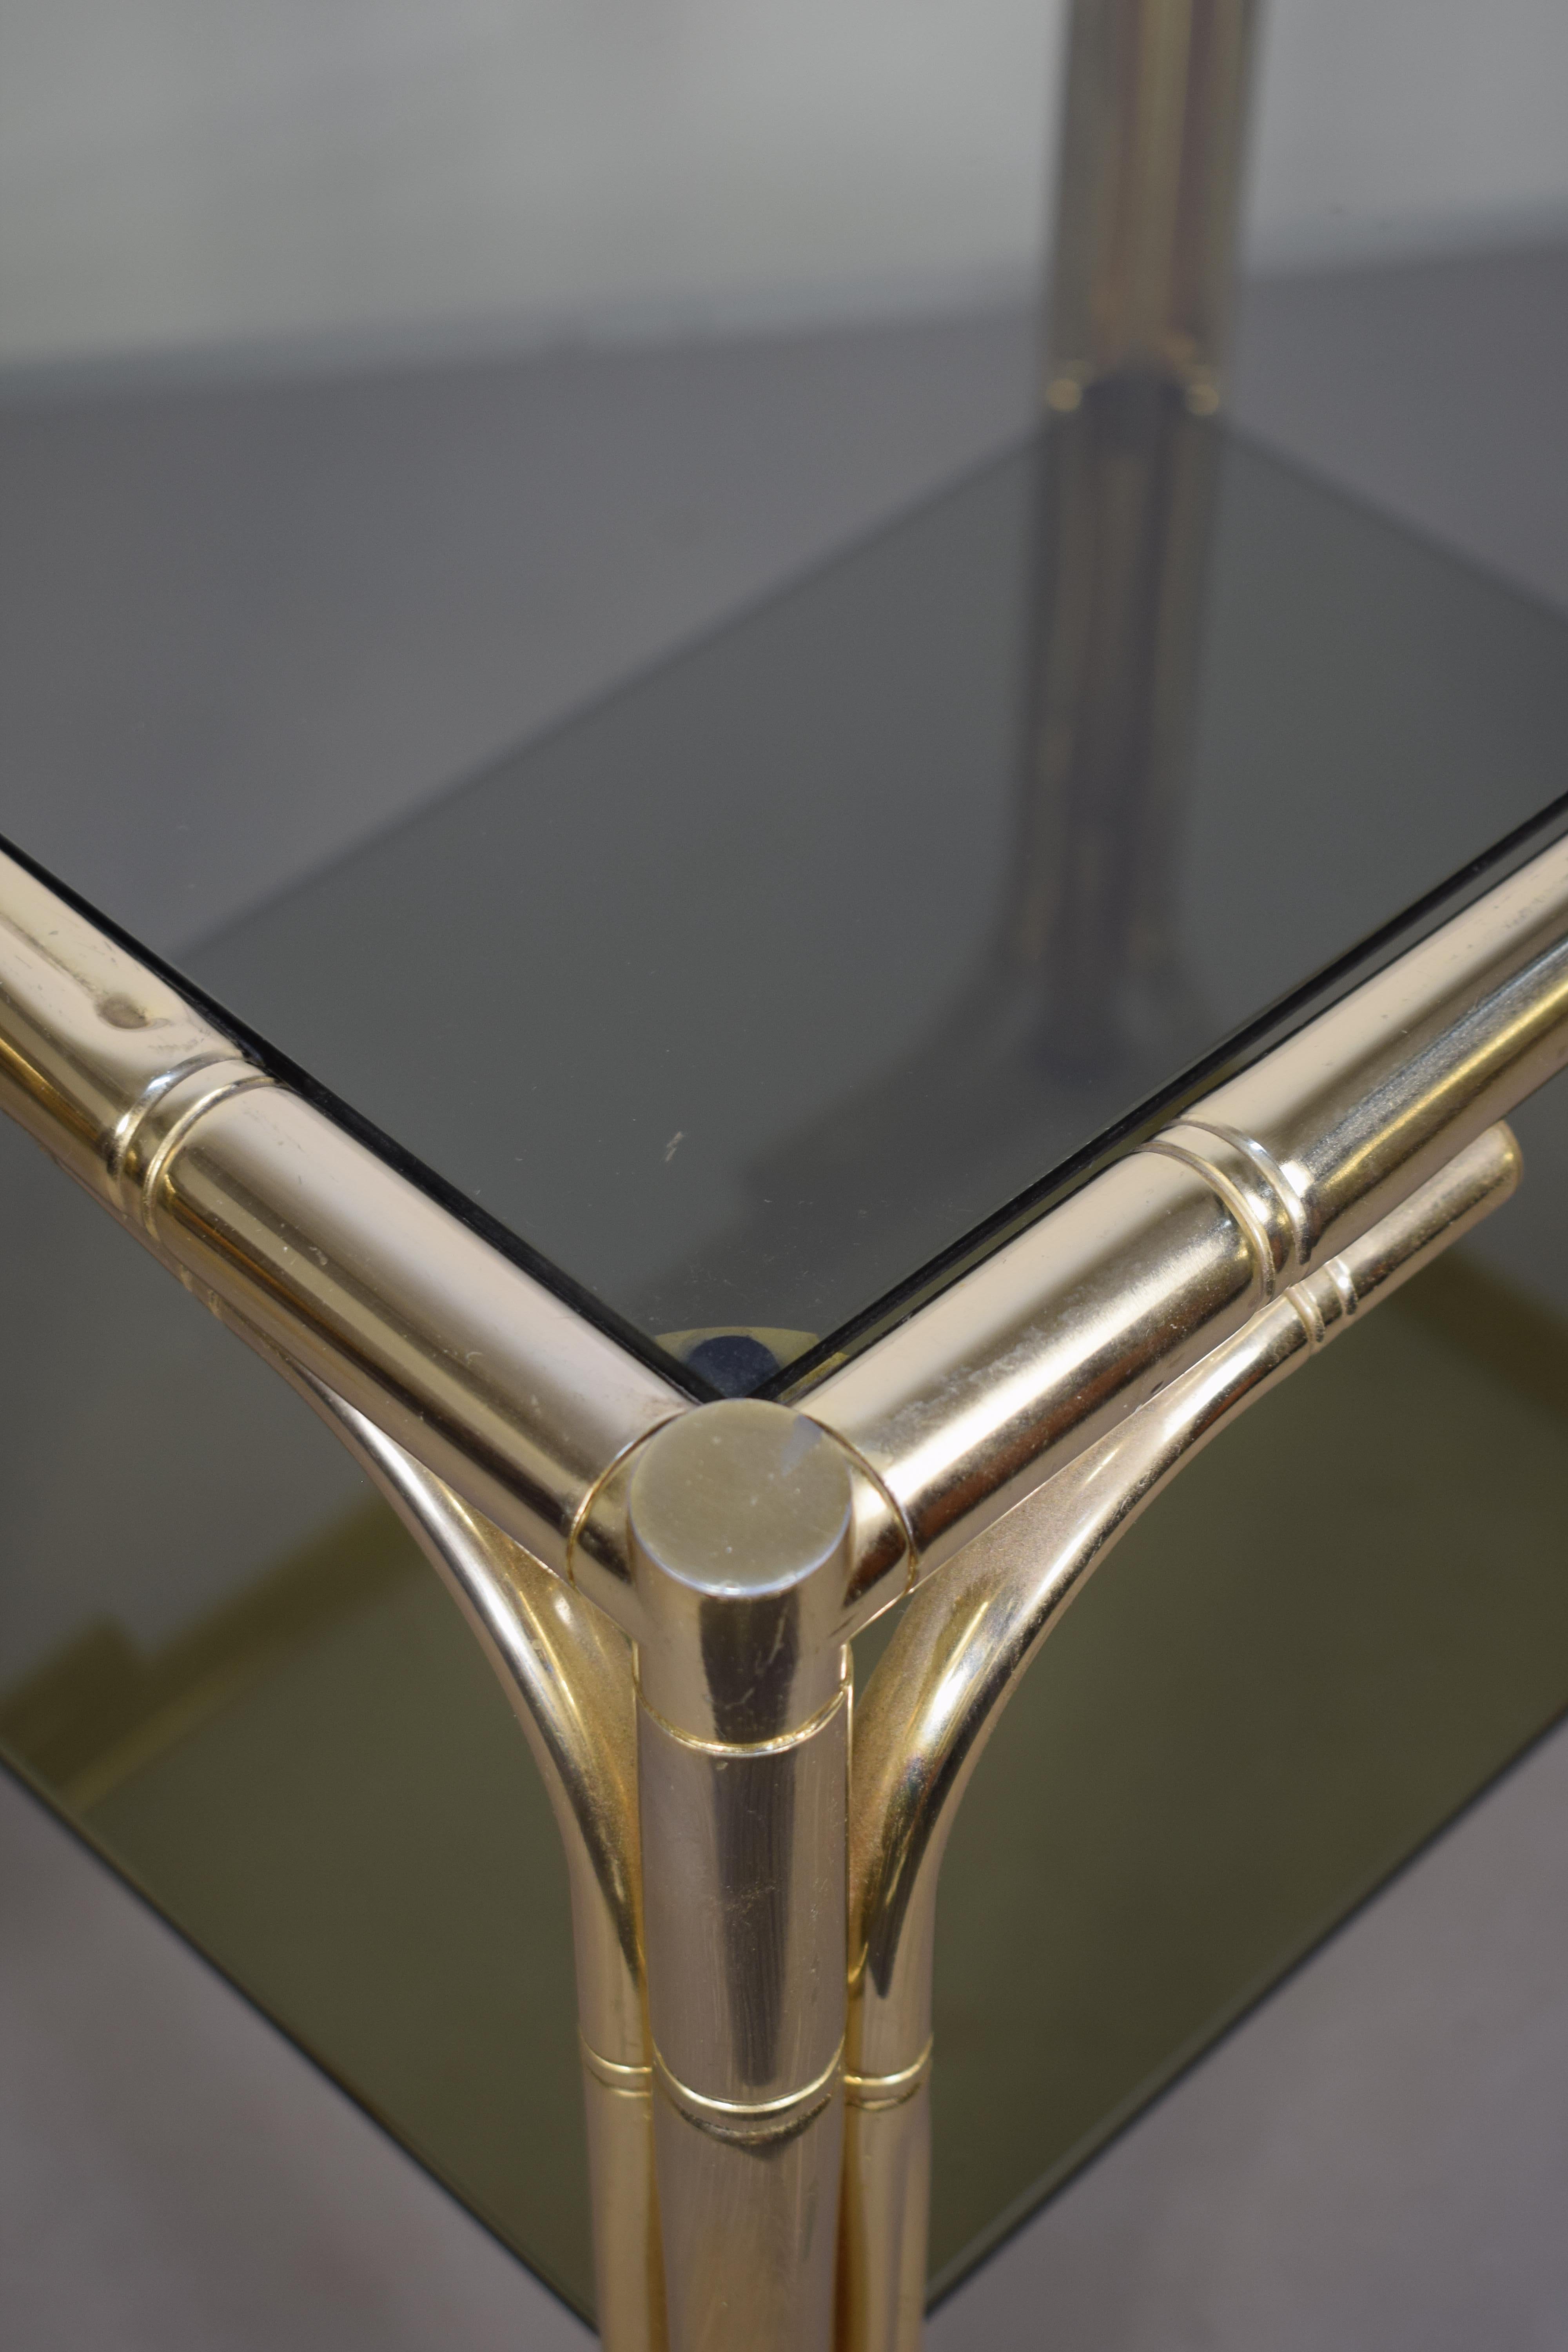 Paire de tables basses italiennes, métal doré et verre fumé, années 1970.

Dimensions : H= 52 cm ; L= 50 cm ; P= 38 cm.